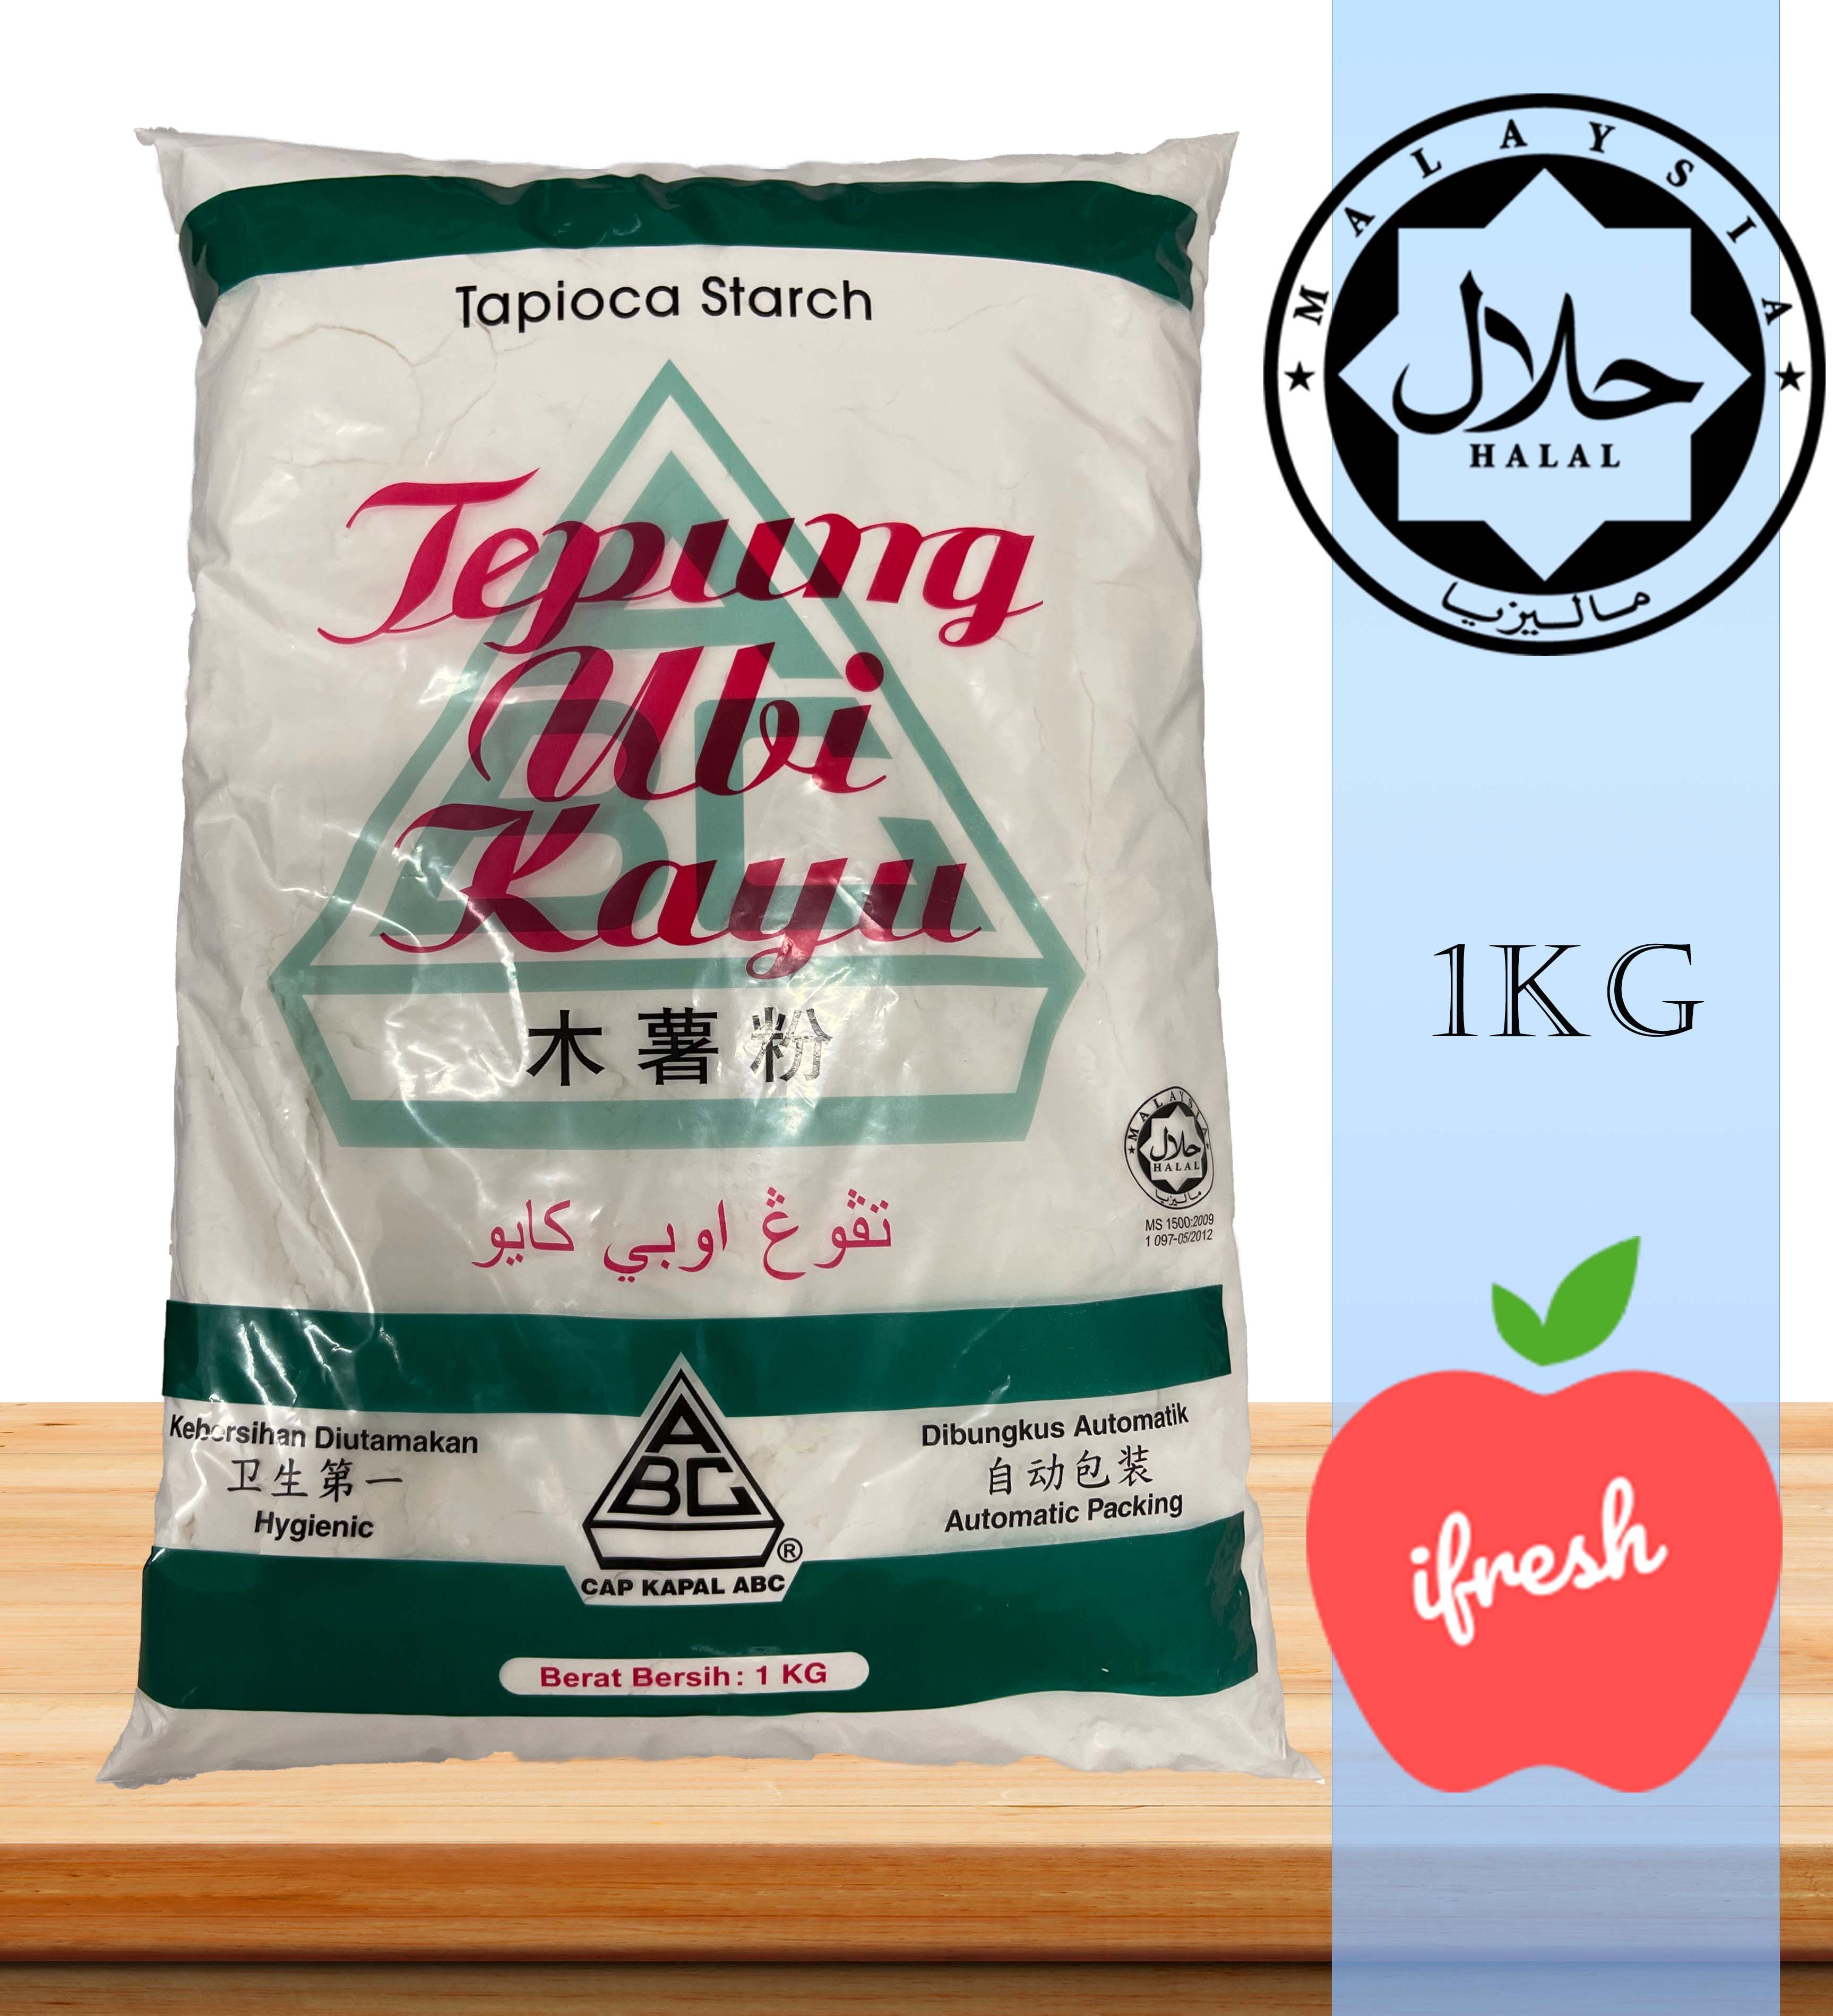 Tepung tapioka in malaysia